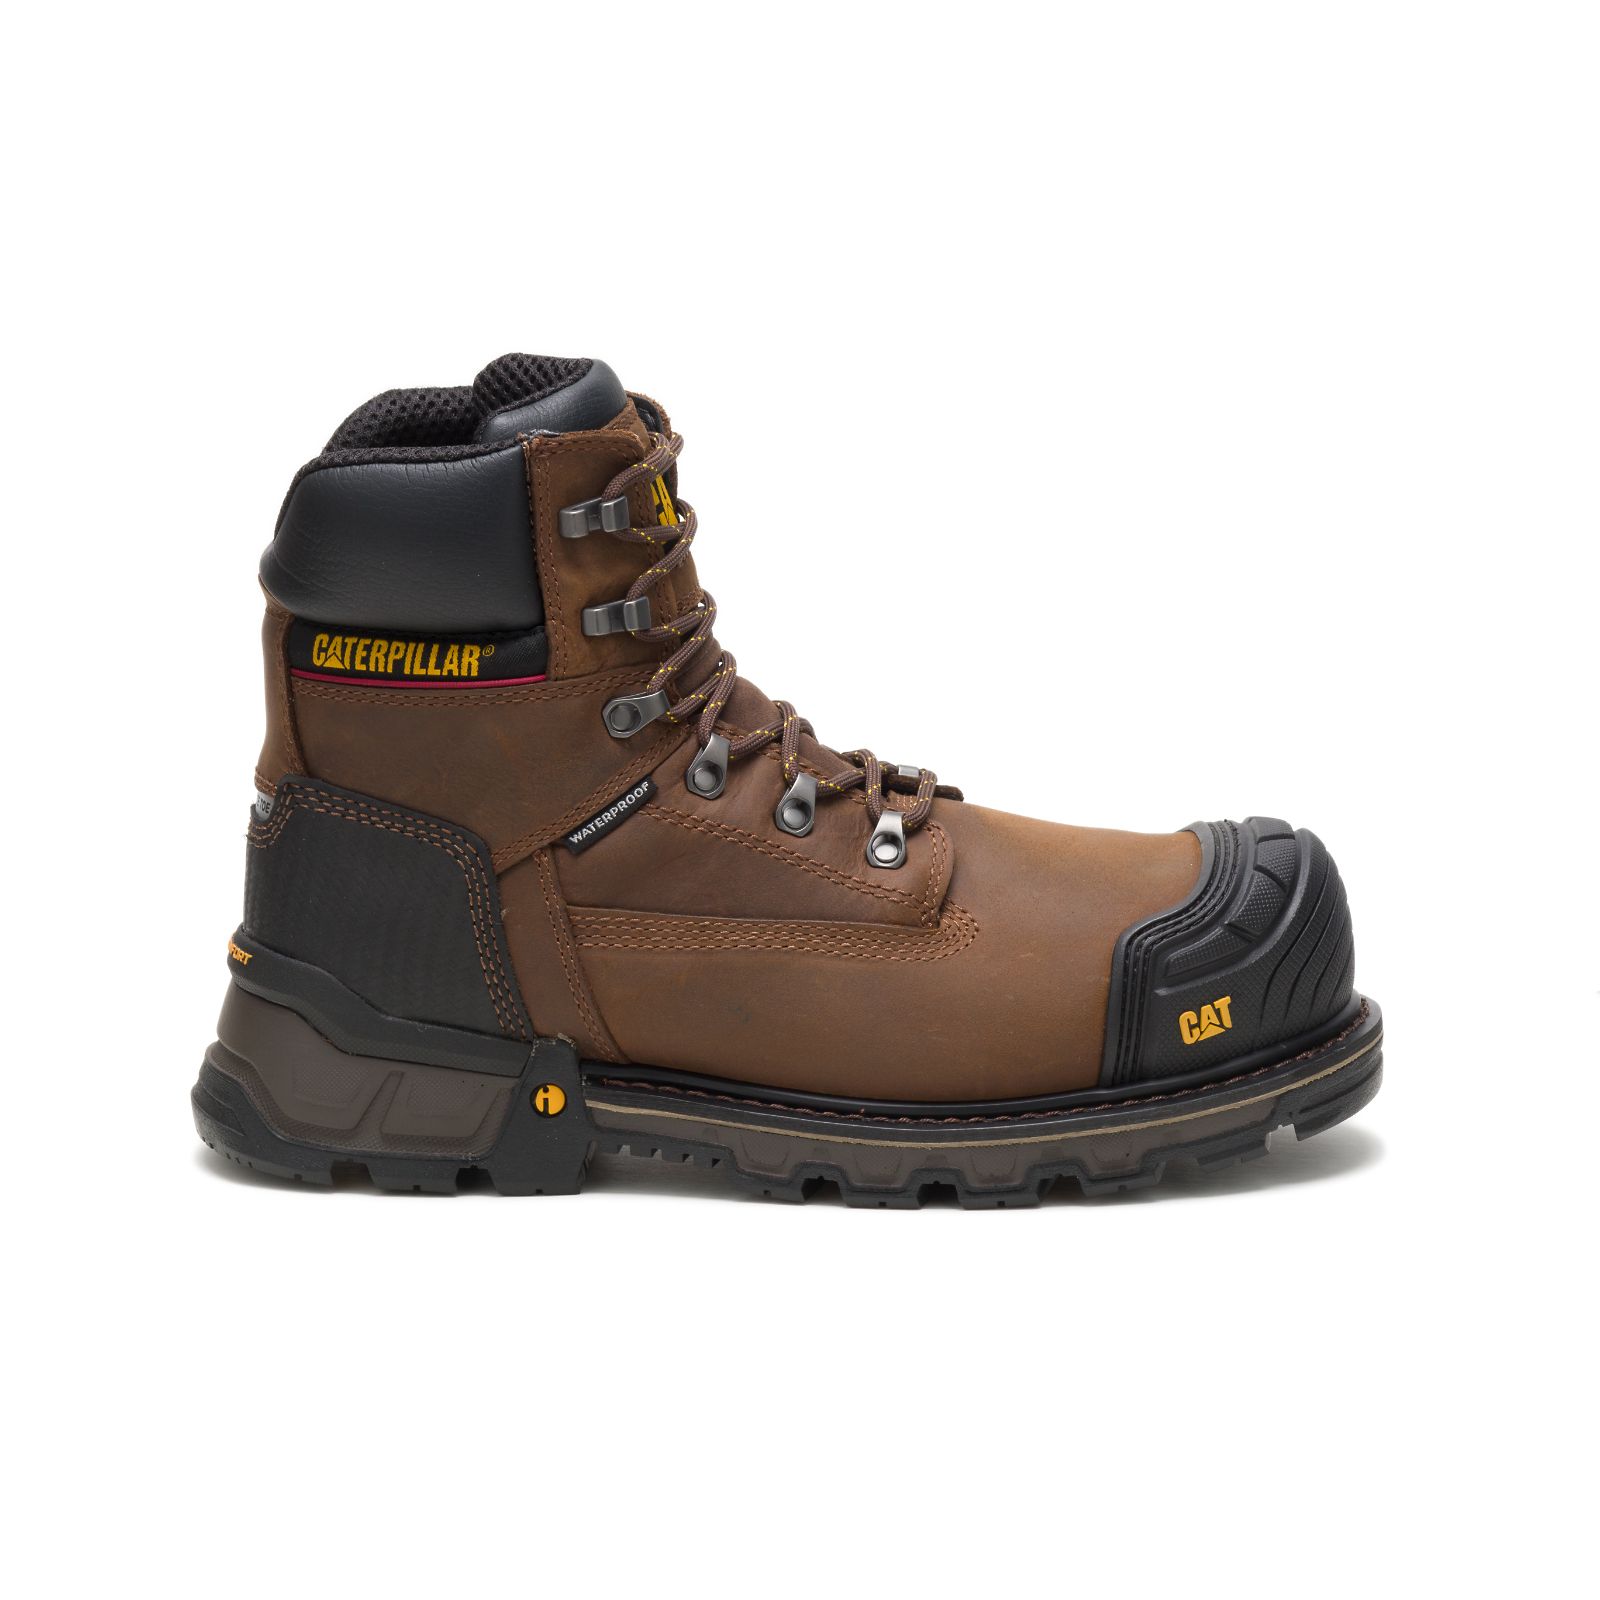 Caterpillar Excavator Xl 6" Waterproof Composite Toe - Mens Work Boots - Dark Brown - NZ (307XECBKS)